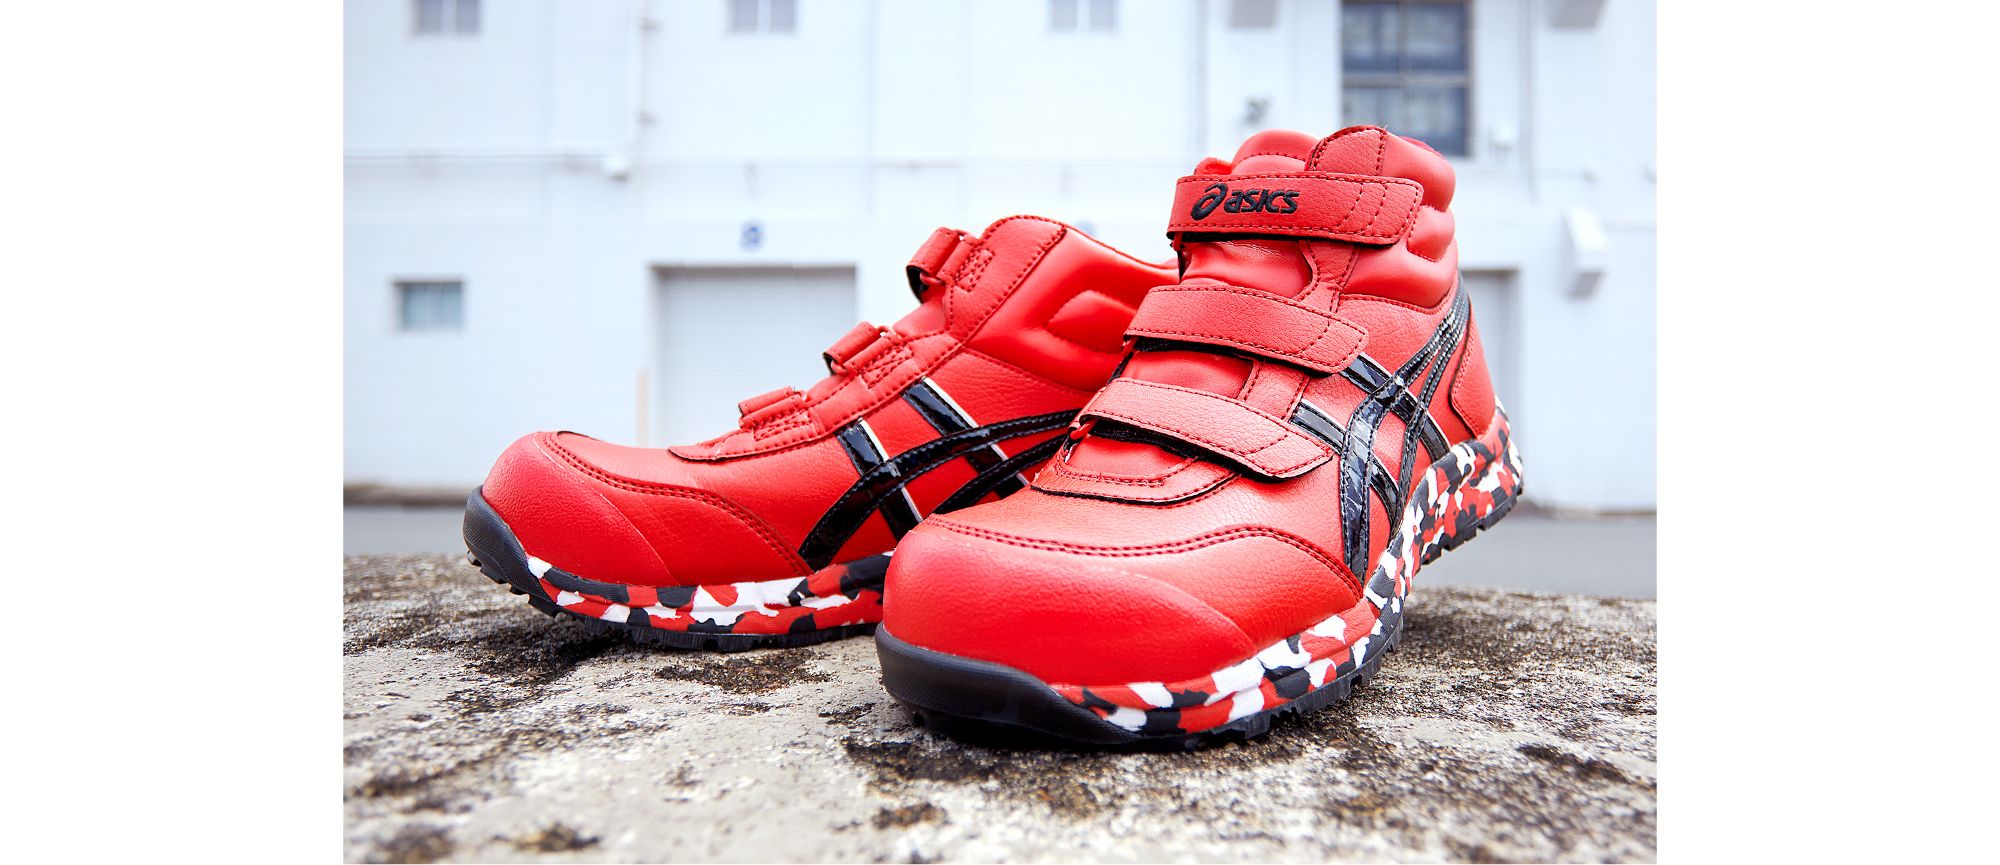 アシックス安全靴 RED HOT レッドホット 3000足限定カラー 新品